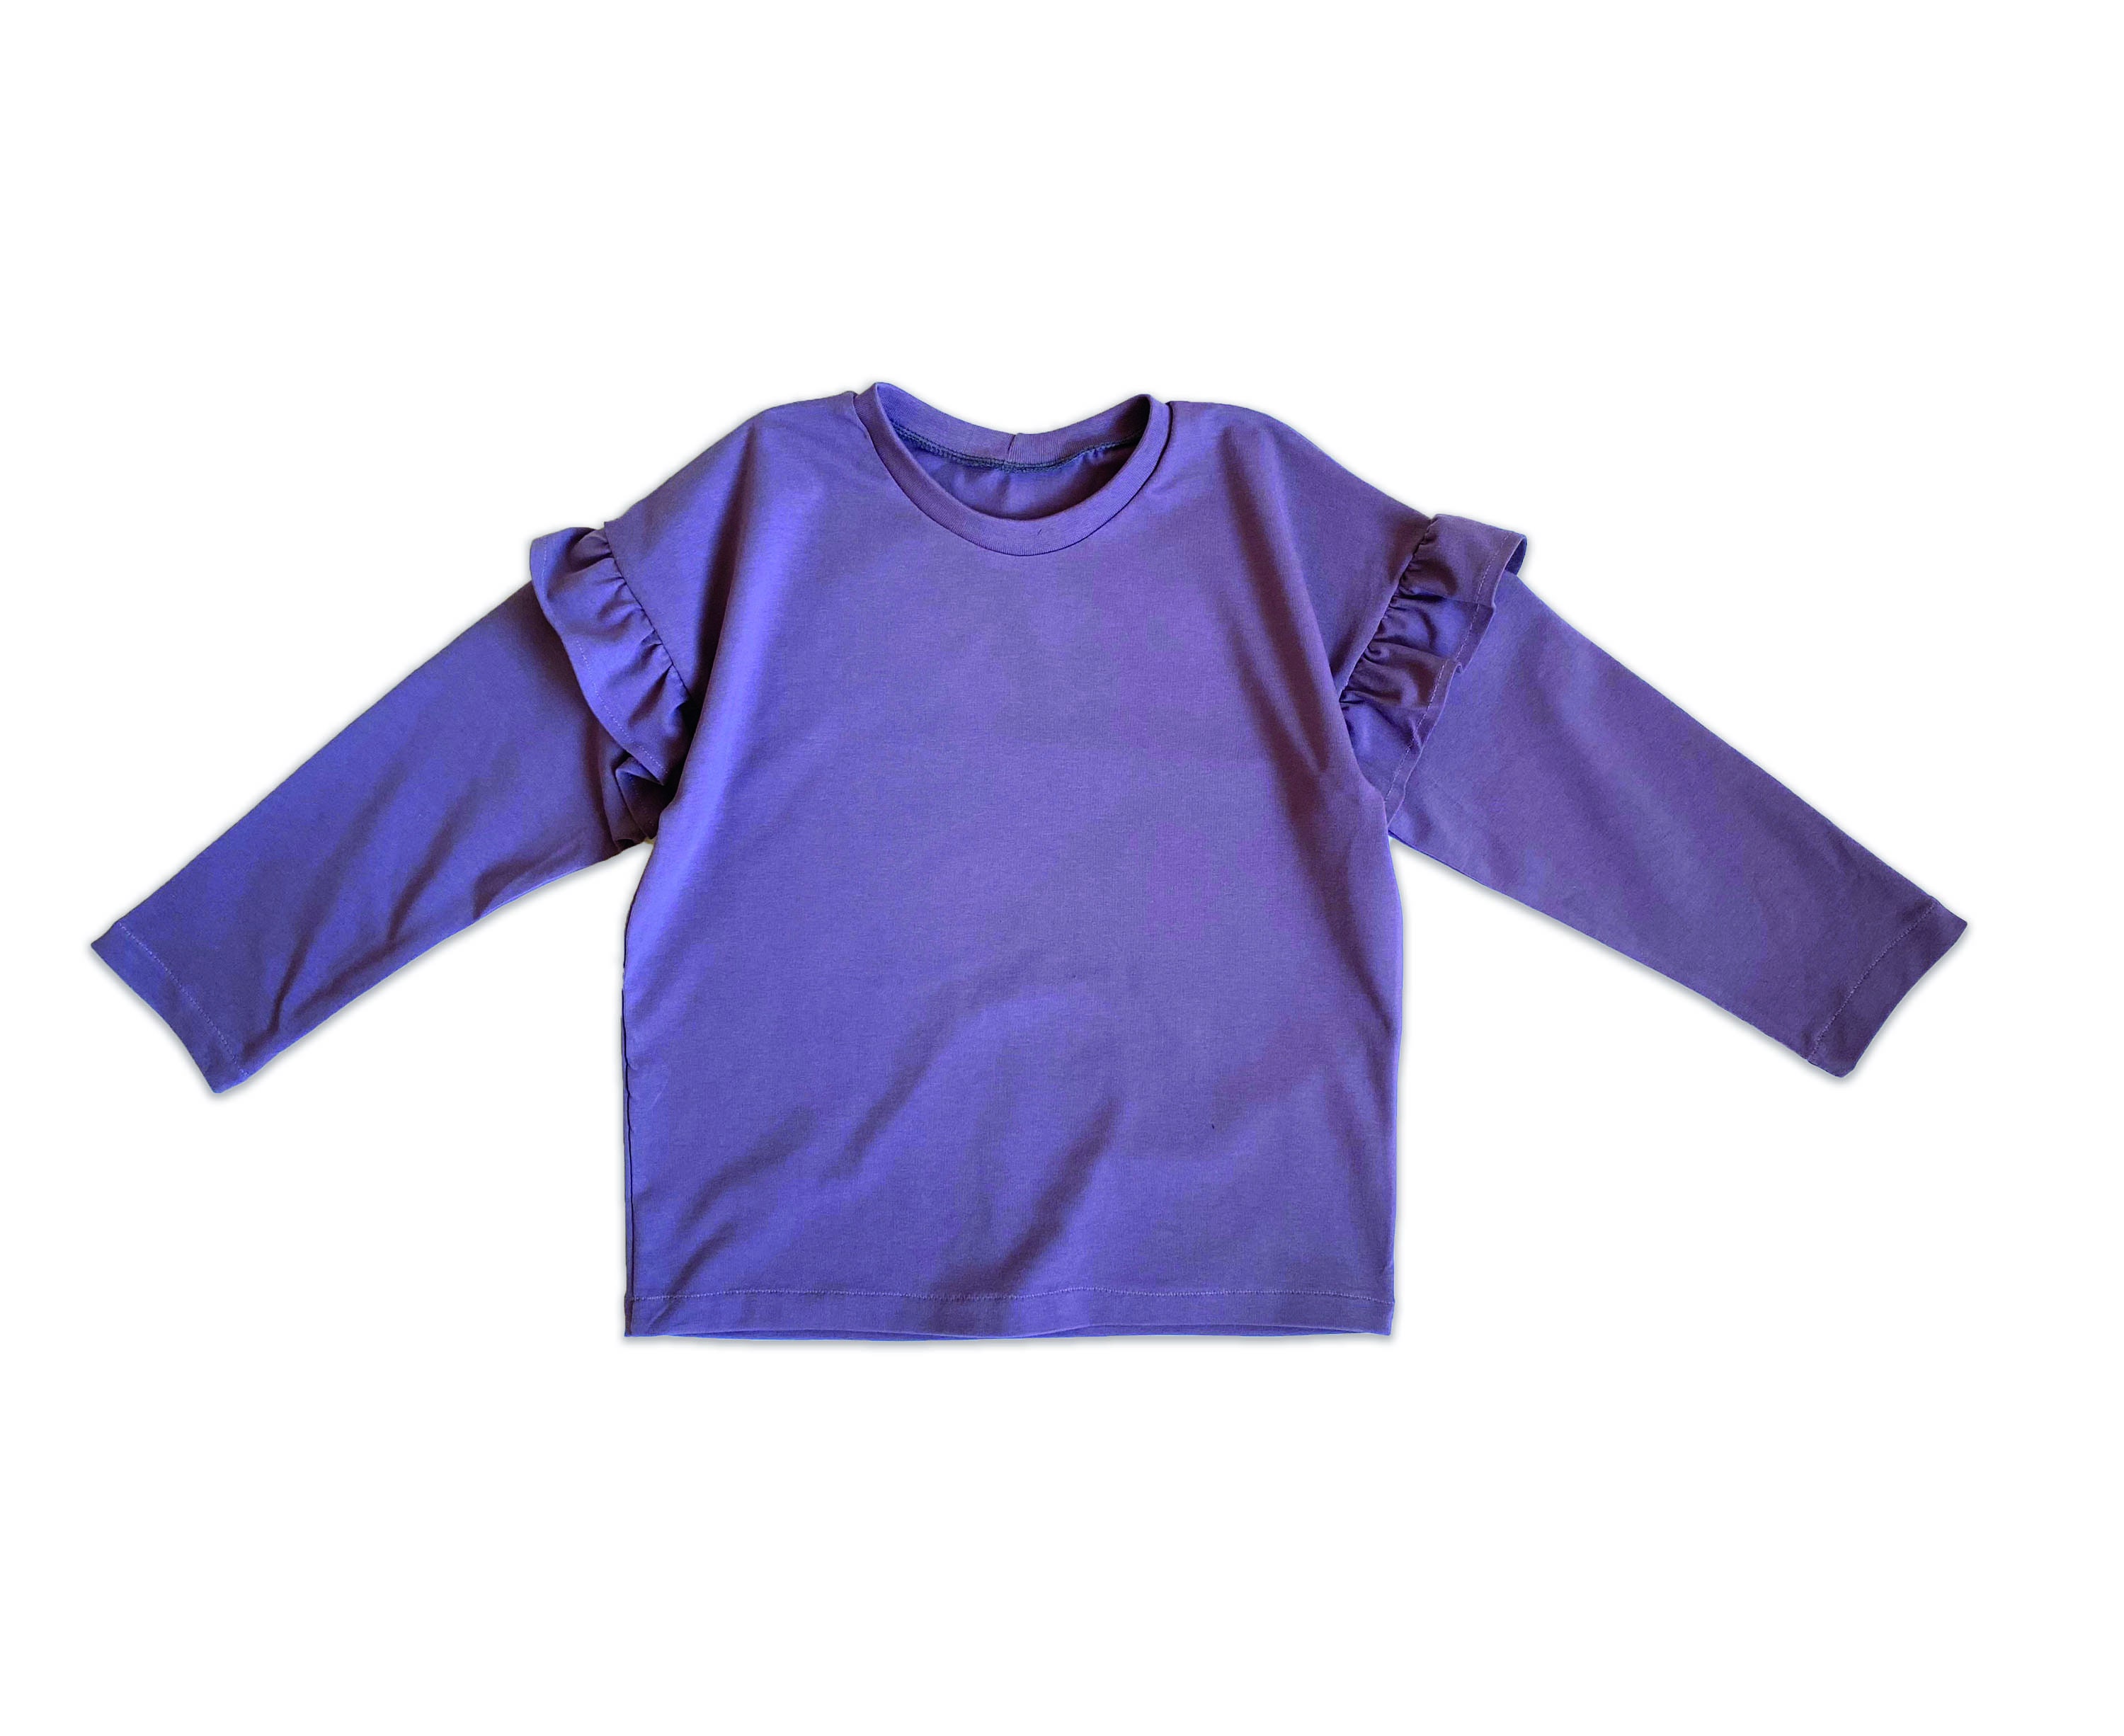 Boxy Tee Pattern Pattern, T-shirt Sleeve Oversized Sewing Patter, Pattern - Digital T-shirt Ruffle Etsy Sewing Pattern, Toddler Pocket Baby T-shirt